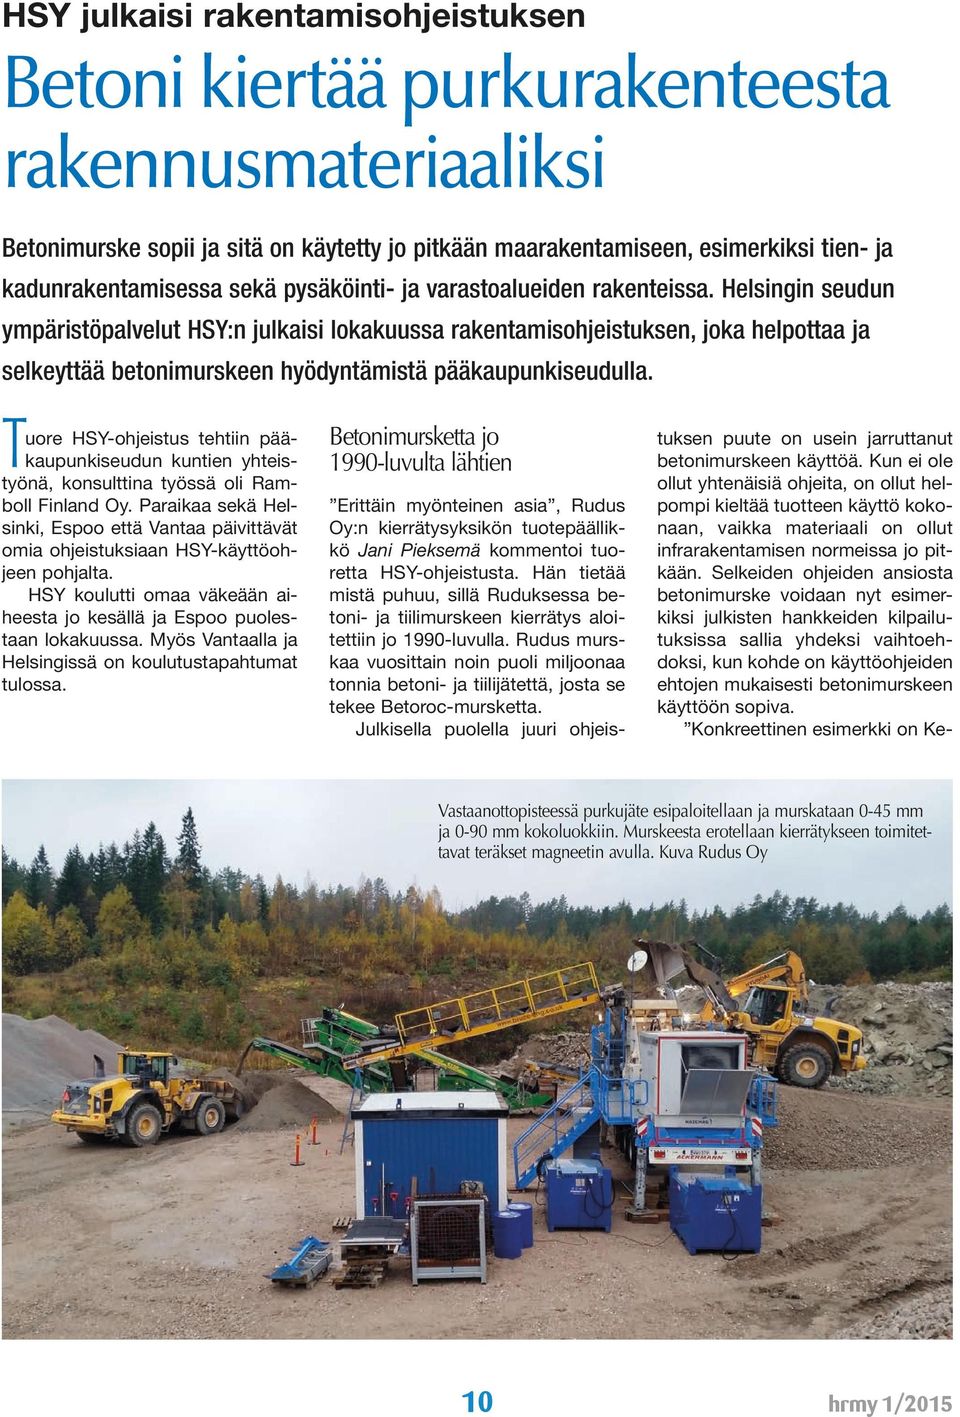 Helsingin seudun ympäristöpalvelut HSY:n julkaisi lokakuussa rakentamisohjeistuksen, joka helpottaa ja selkeyttää betonimurskeen hyödyntämistä pääkaupunkiseudulla.